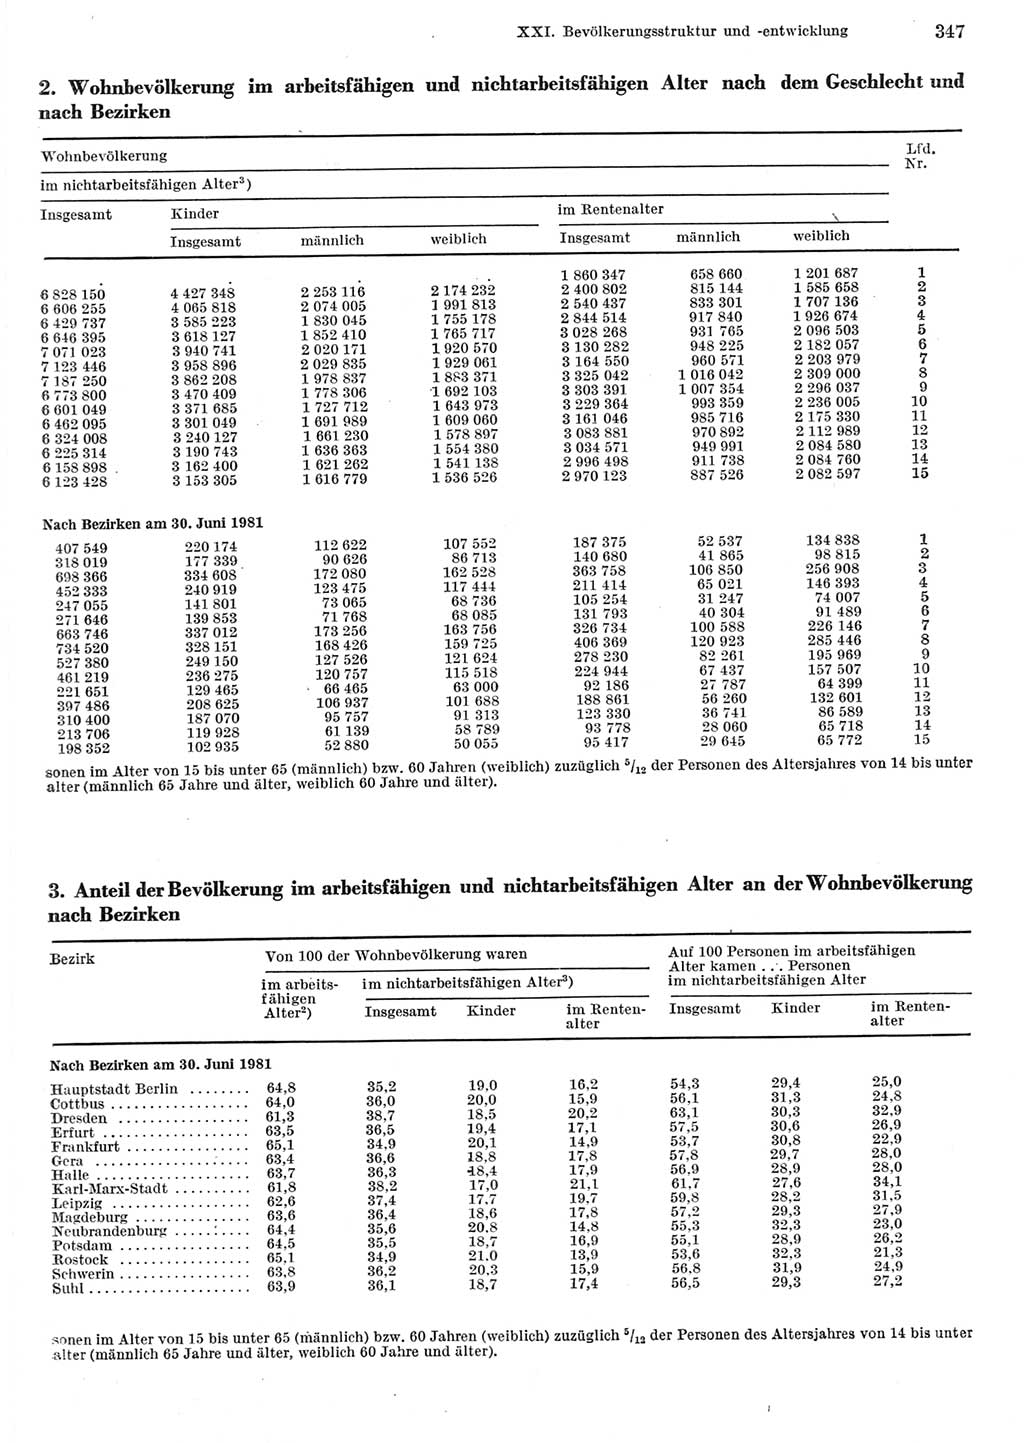 Statistisches Jahrbuch der Deutschen Demokratischen Republik (DDR) 1982, Seite 347 (Stat. Jb. DDR 1982, S. 347)